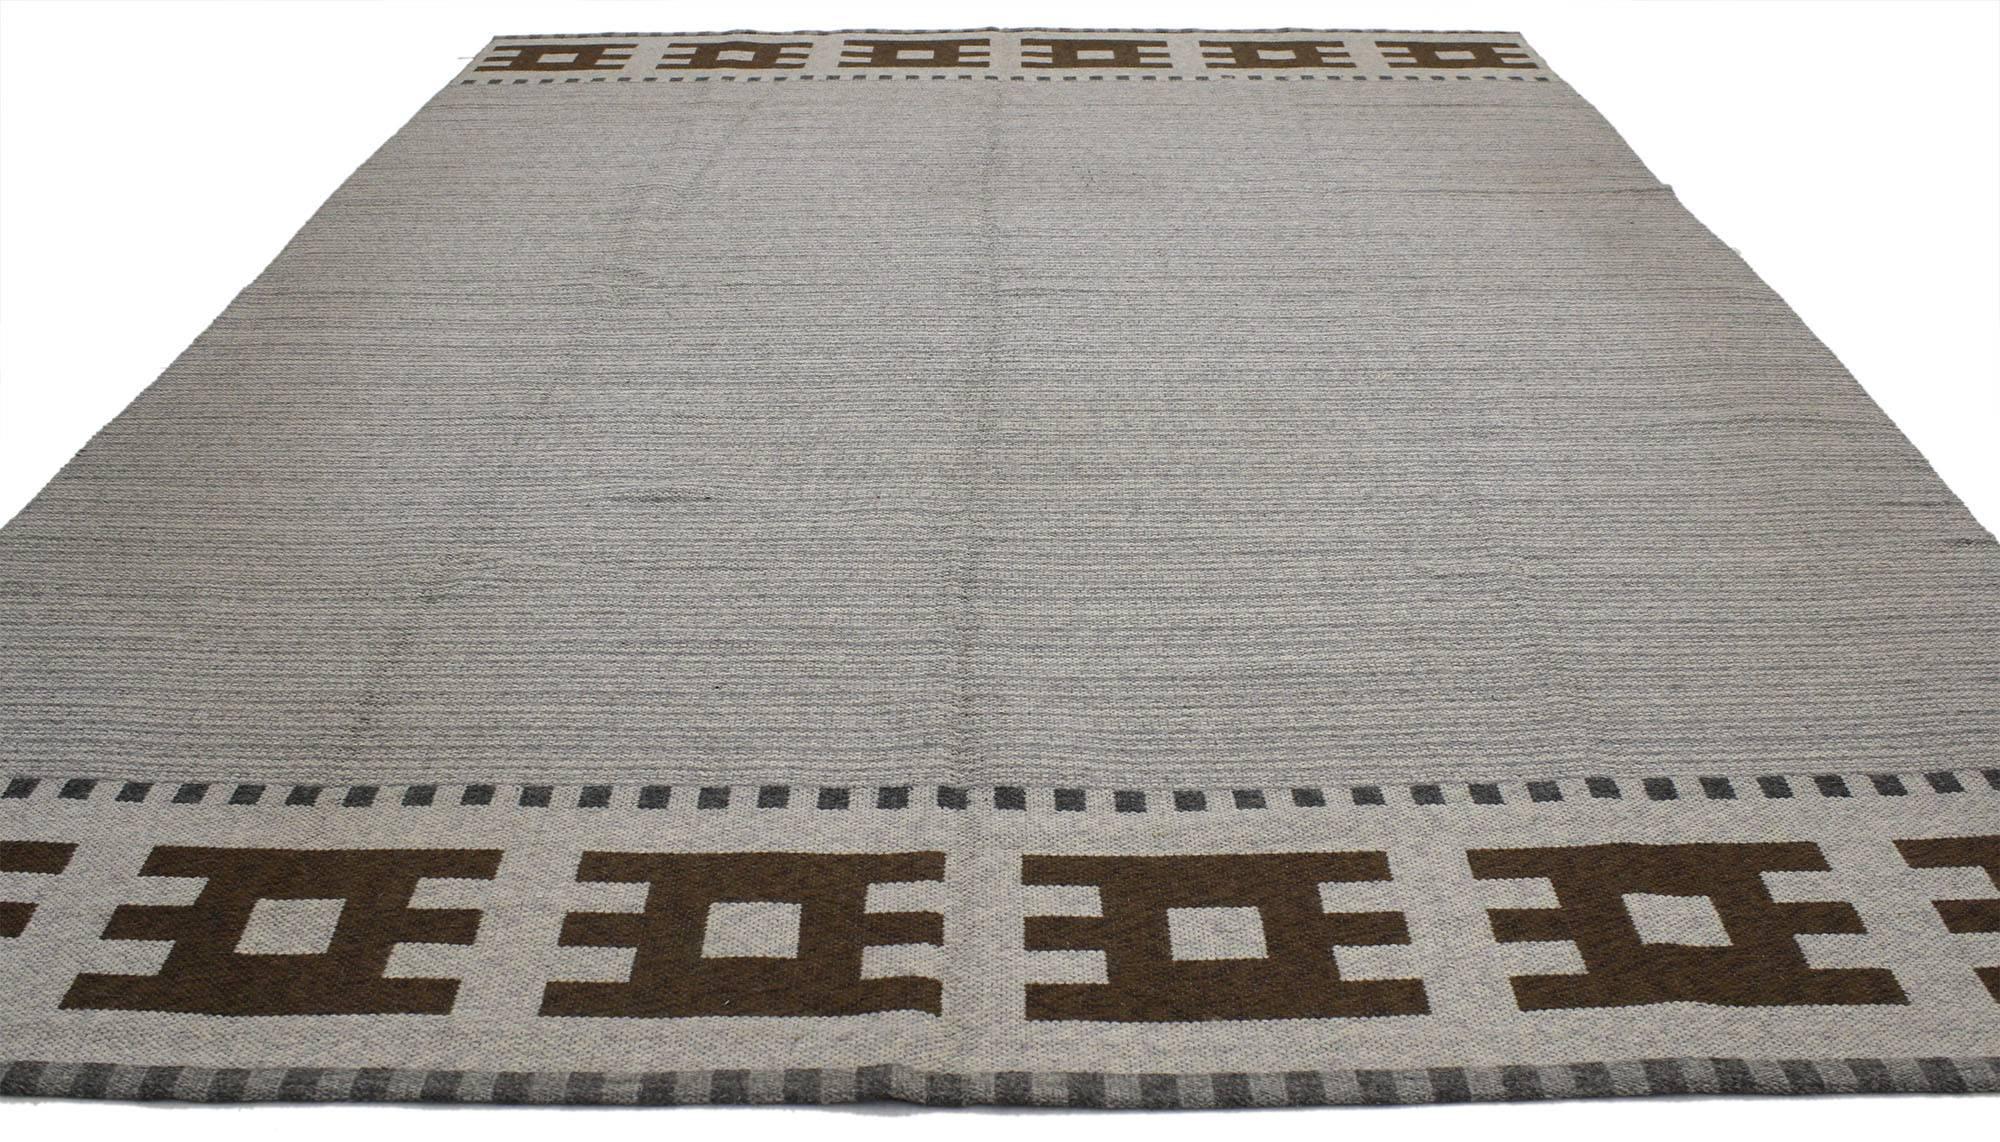 77037, alfombra sueca Kilim vintage de estilo moderno escandinavo - Alfombra Rollakan de tejido plano. Esta alfombra Kilim sueca vintage de lana tejida a mano, de estilo moderno escandinavo, presenta un campo estriado de color gris abujardado. Está